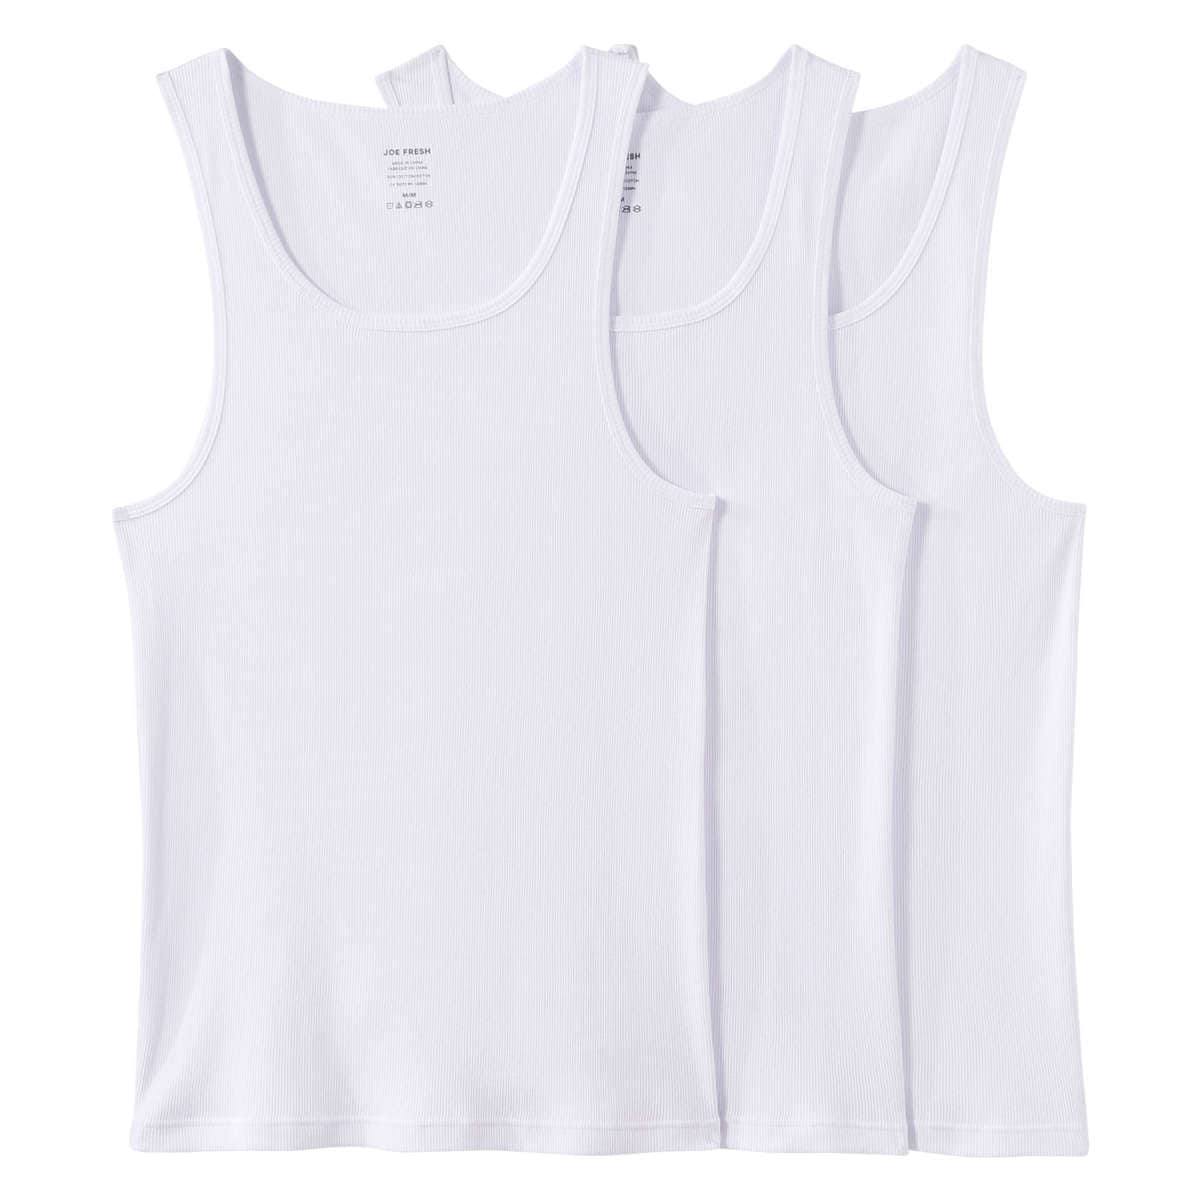 Men's 3 Pack Undershirts in White from Joe Fresh